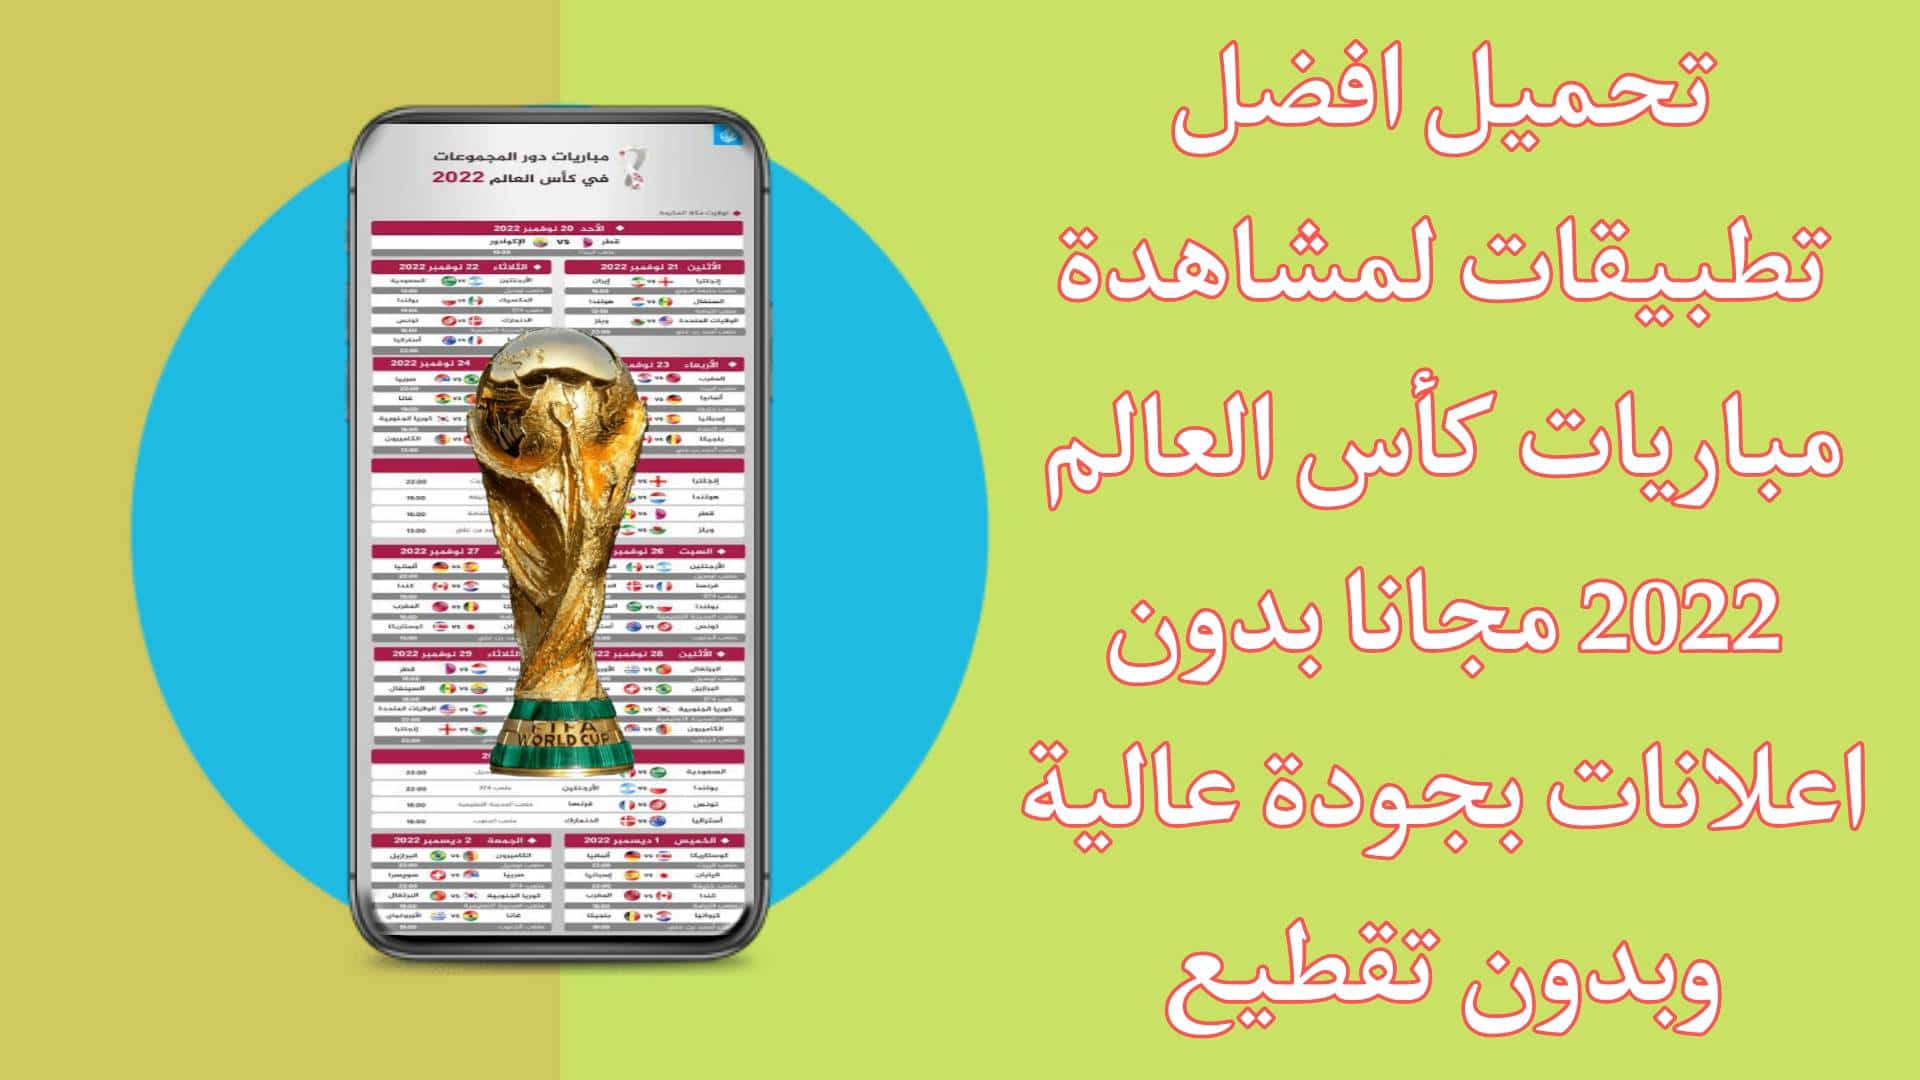 أفضل تطبيقات لمشاهدة مباريات كاس العالم 2022 بث مباشر بدون تقطيع مجانا